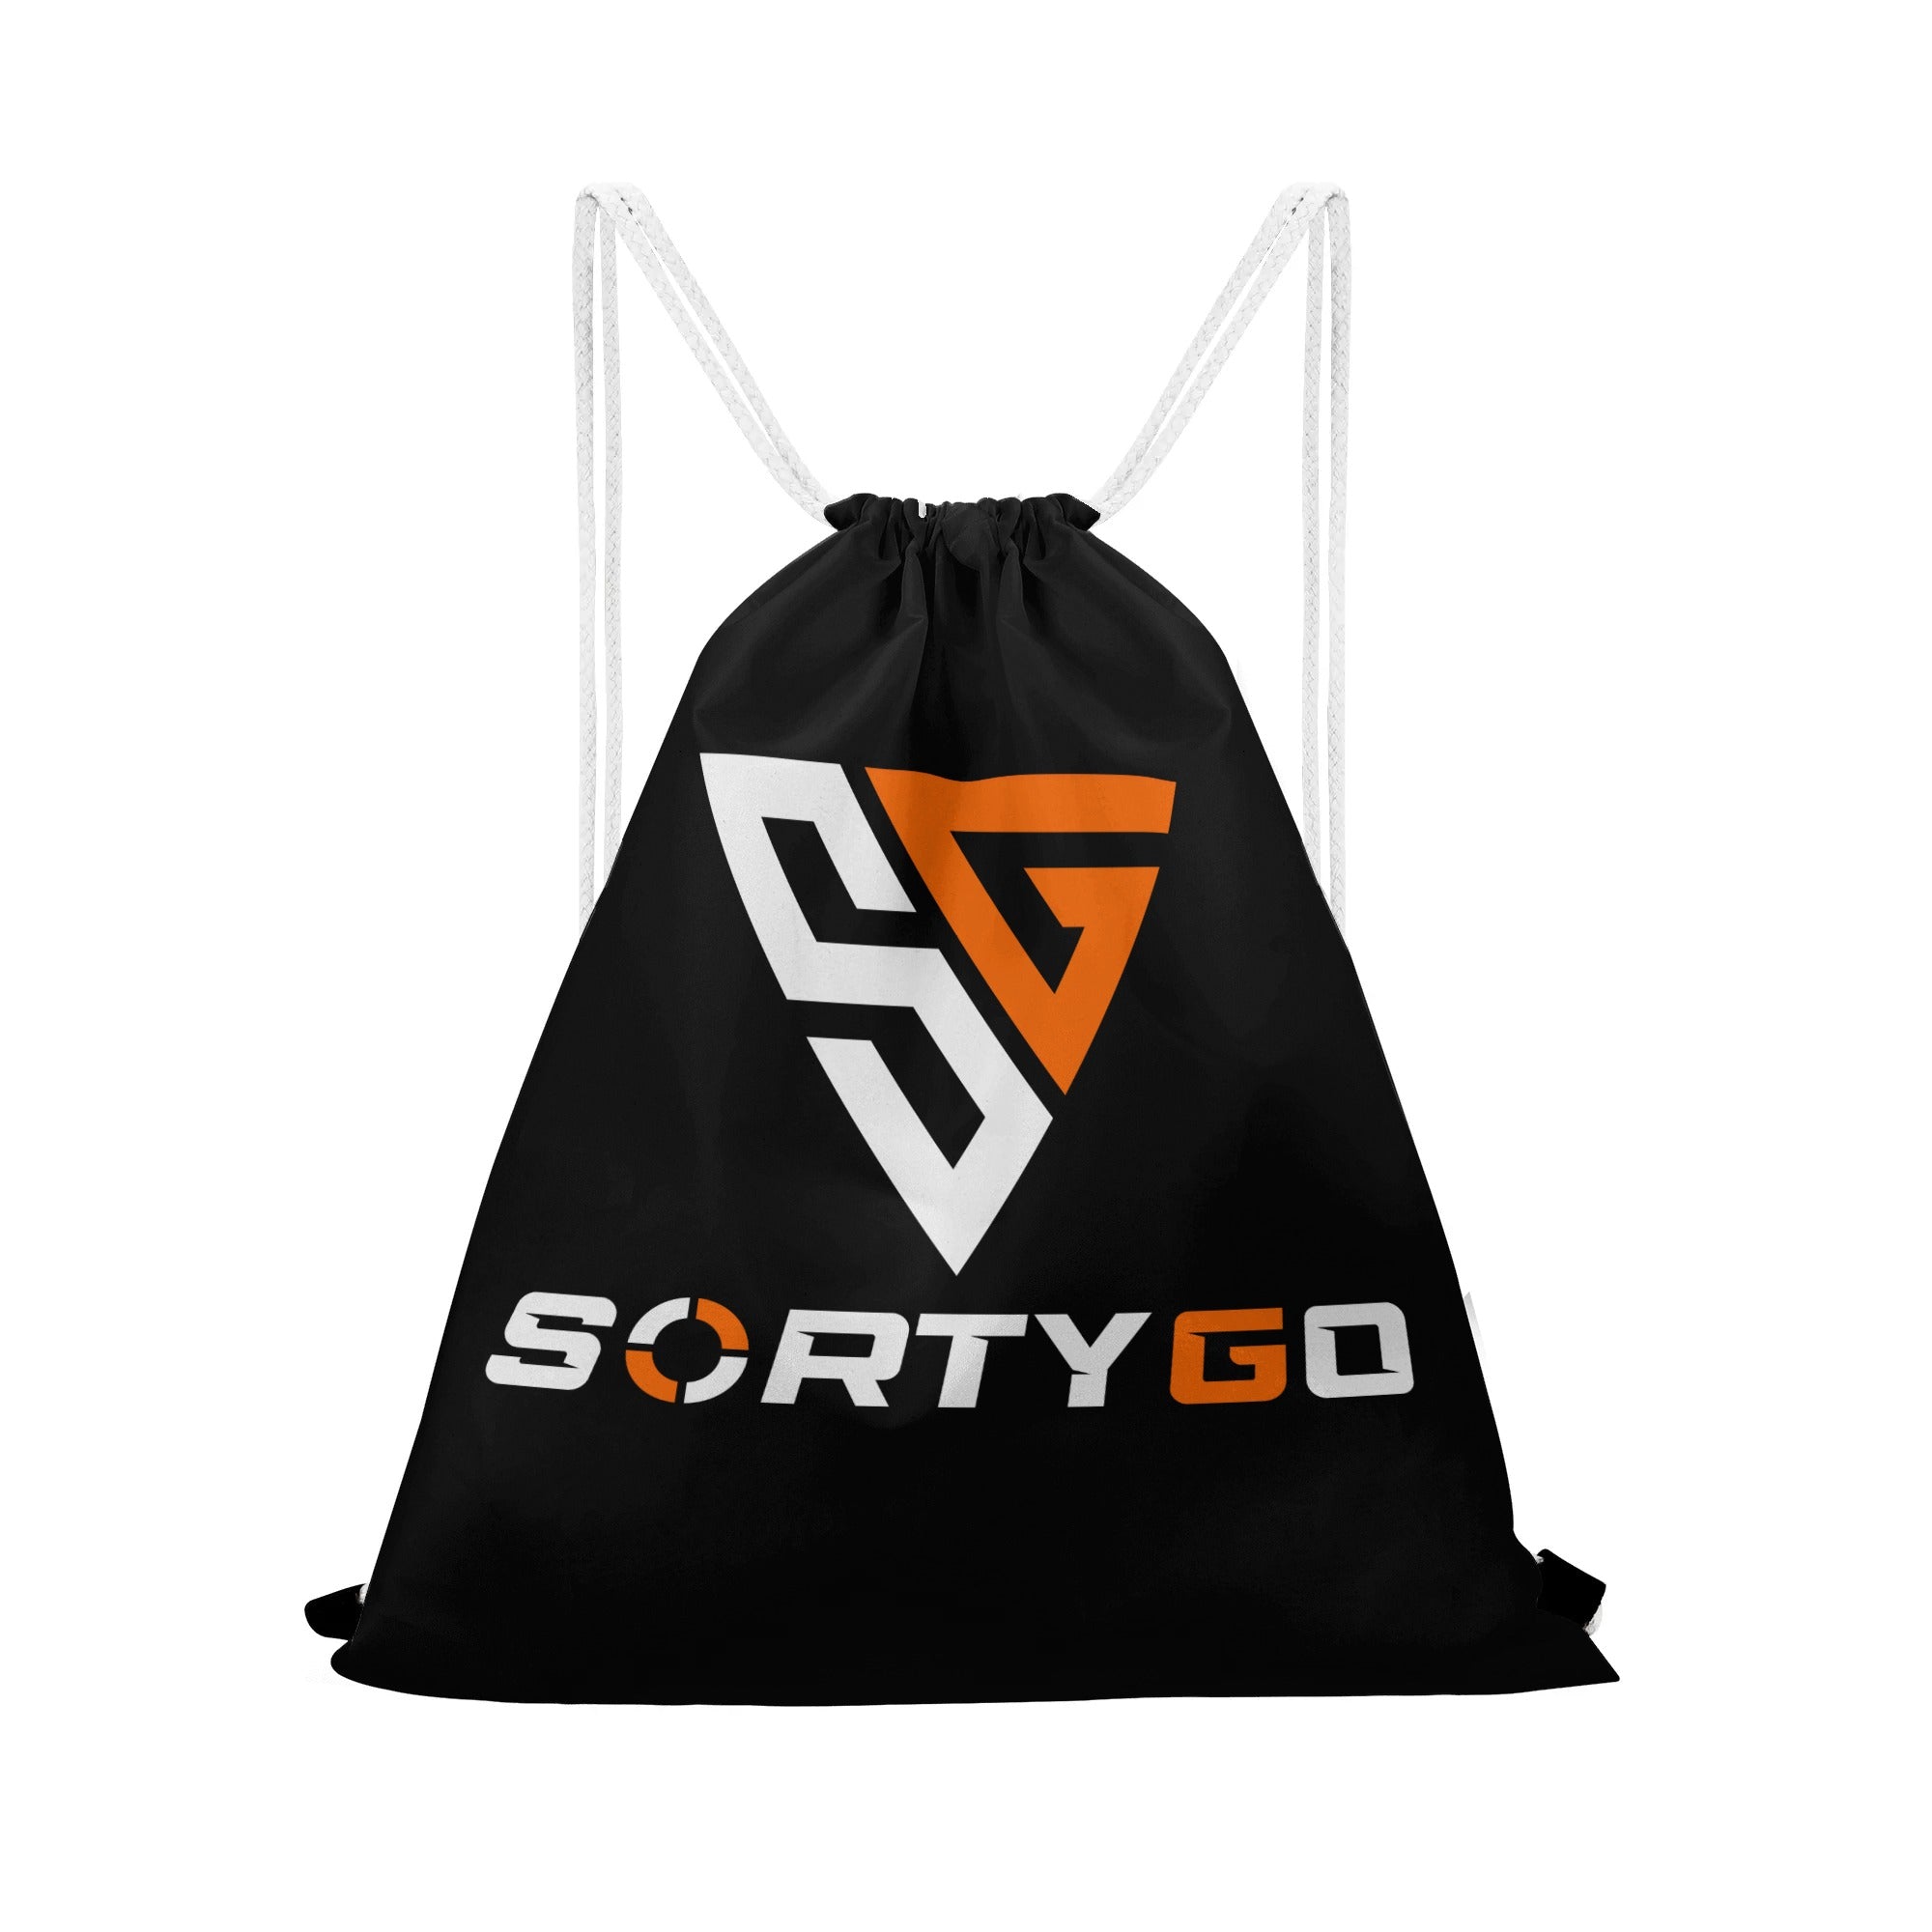 SORTYGO - Zigzag Drawstring Bag in